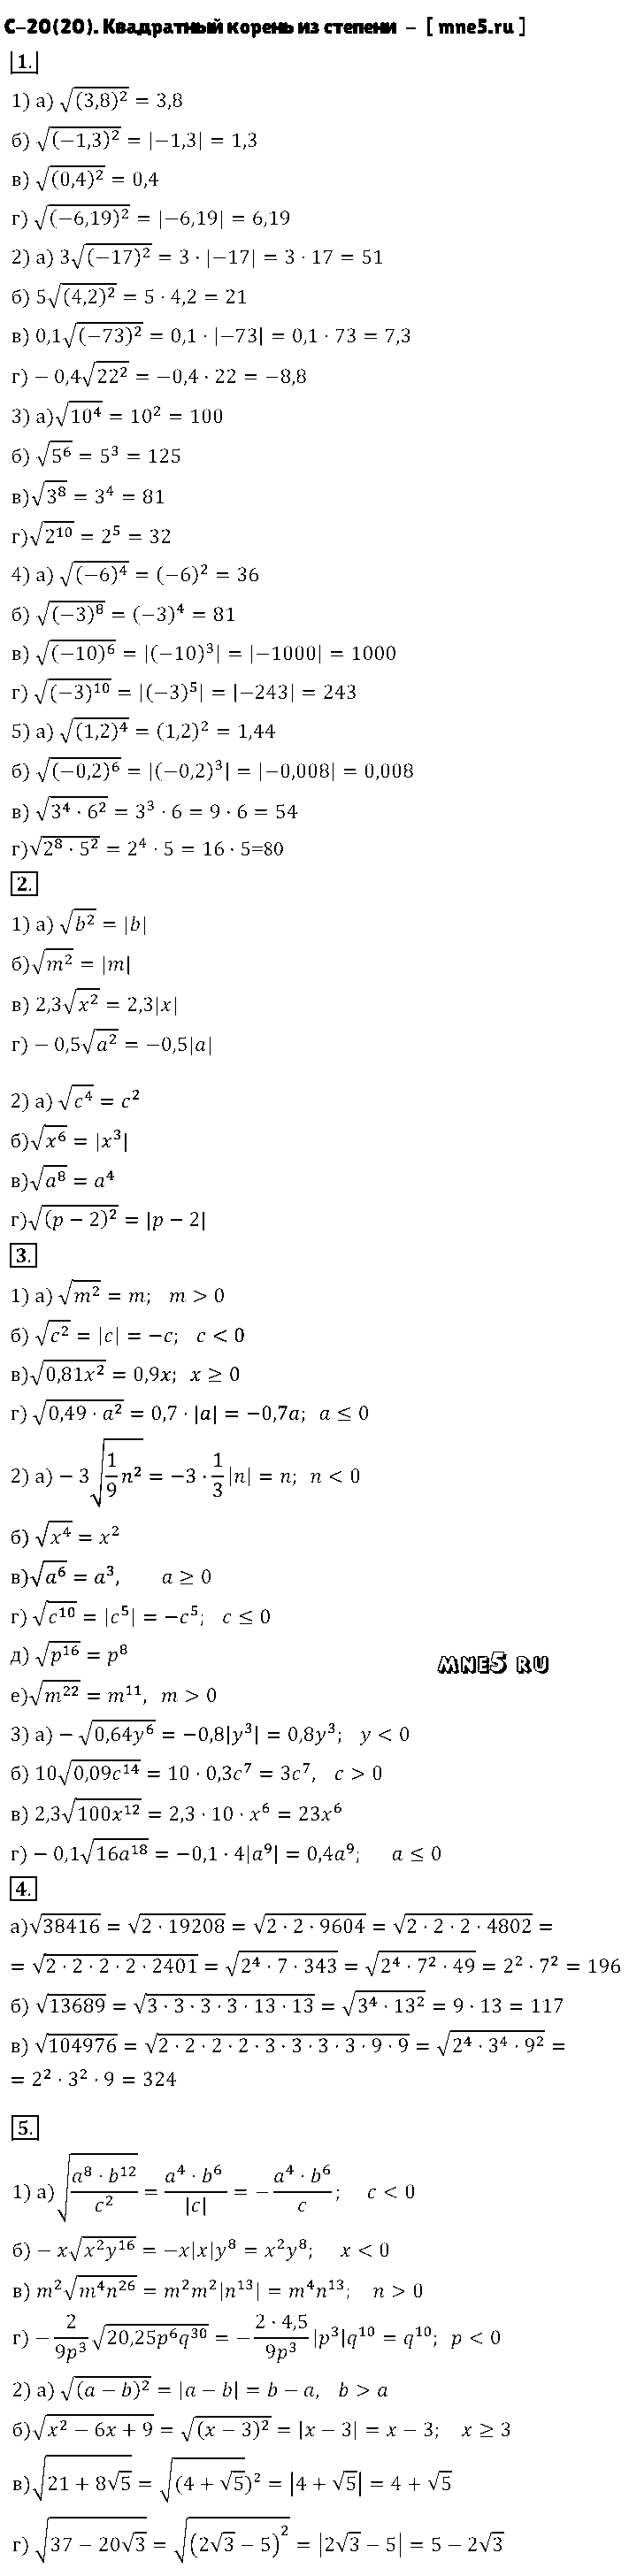 ГДЗ Алгебра 8 класс - С-20(20). Квадратный корень из степени